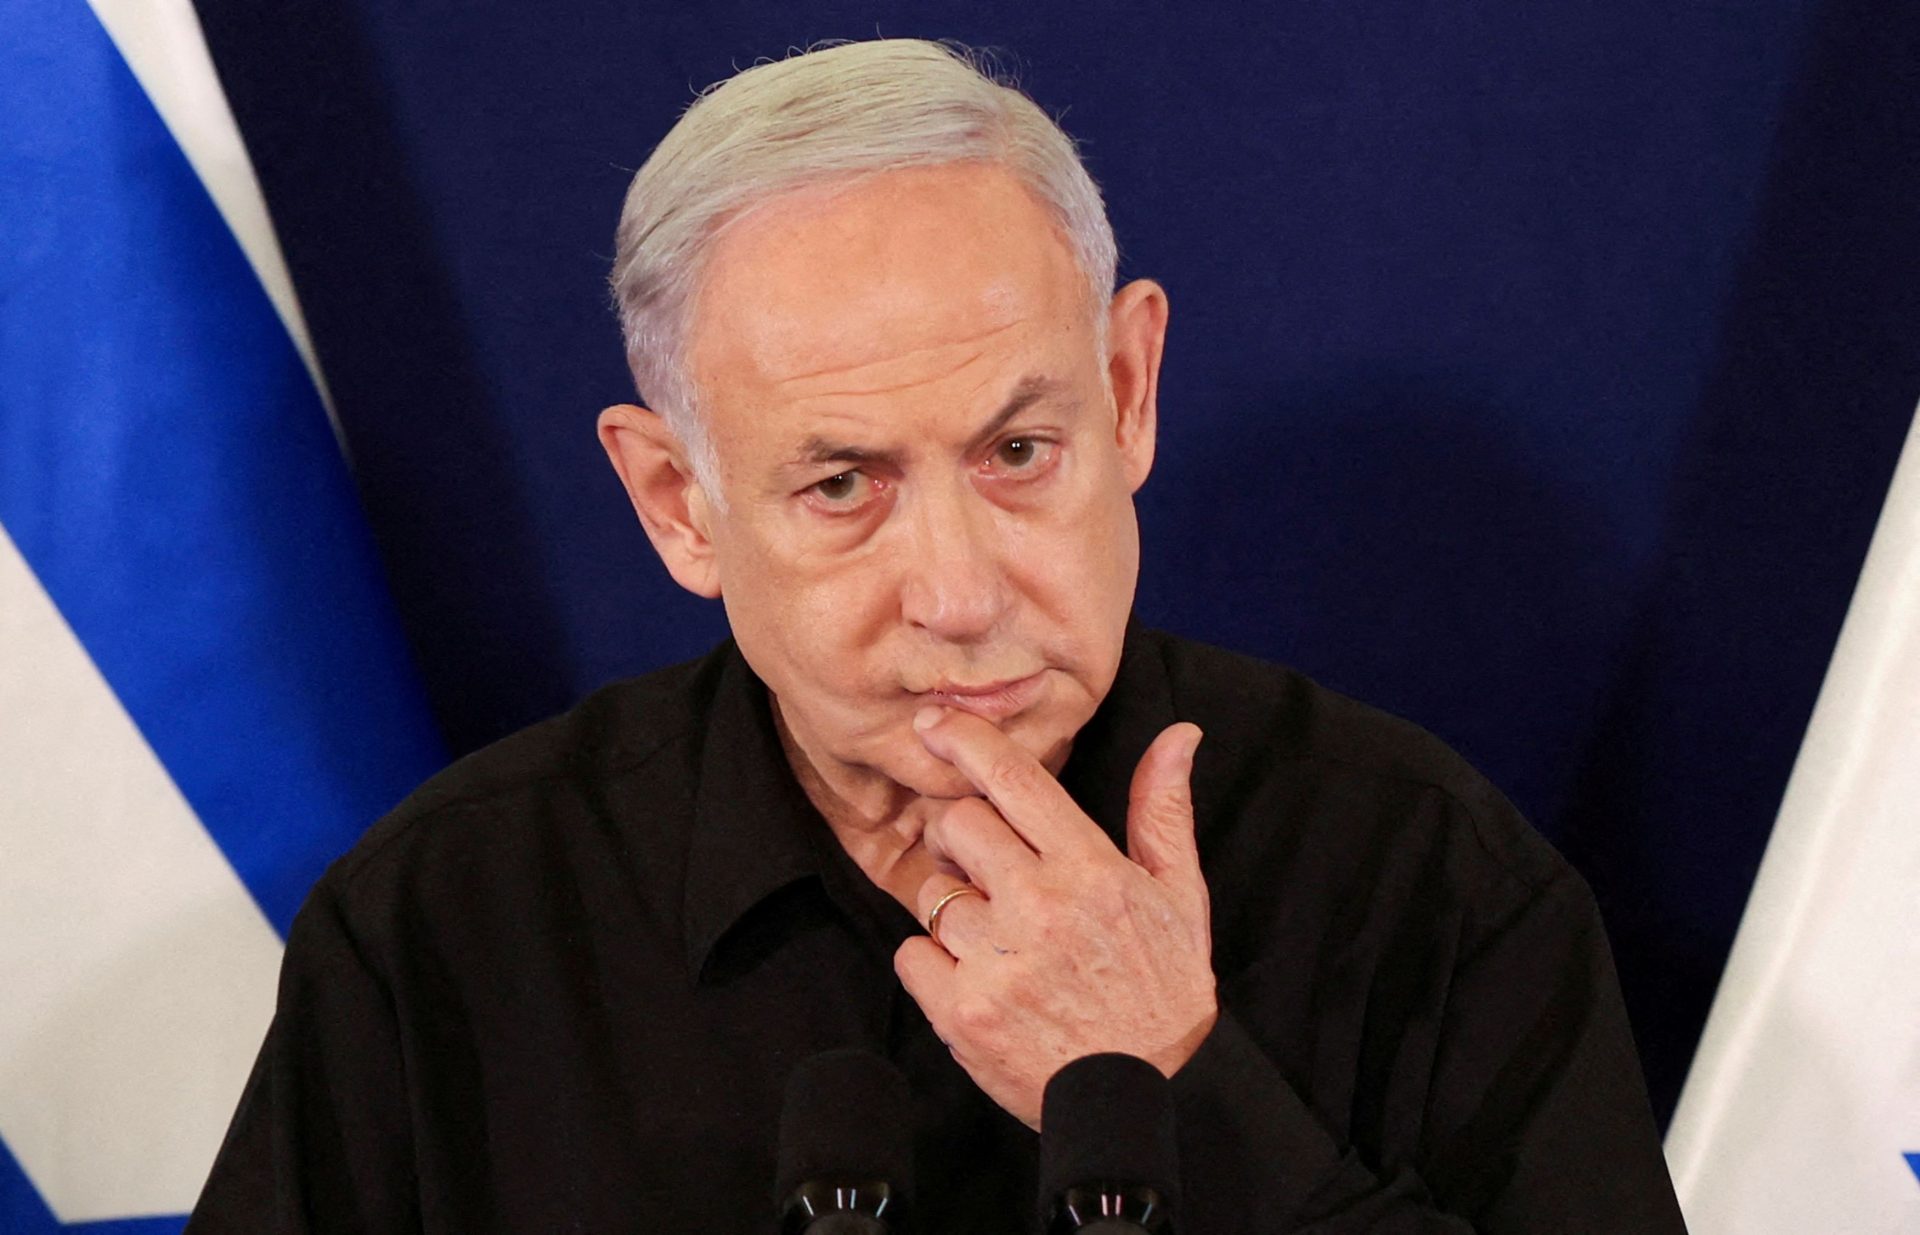 28 économistes israéliens demandent à la Cour suprême de destituer Netanyahu